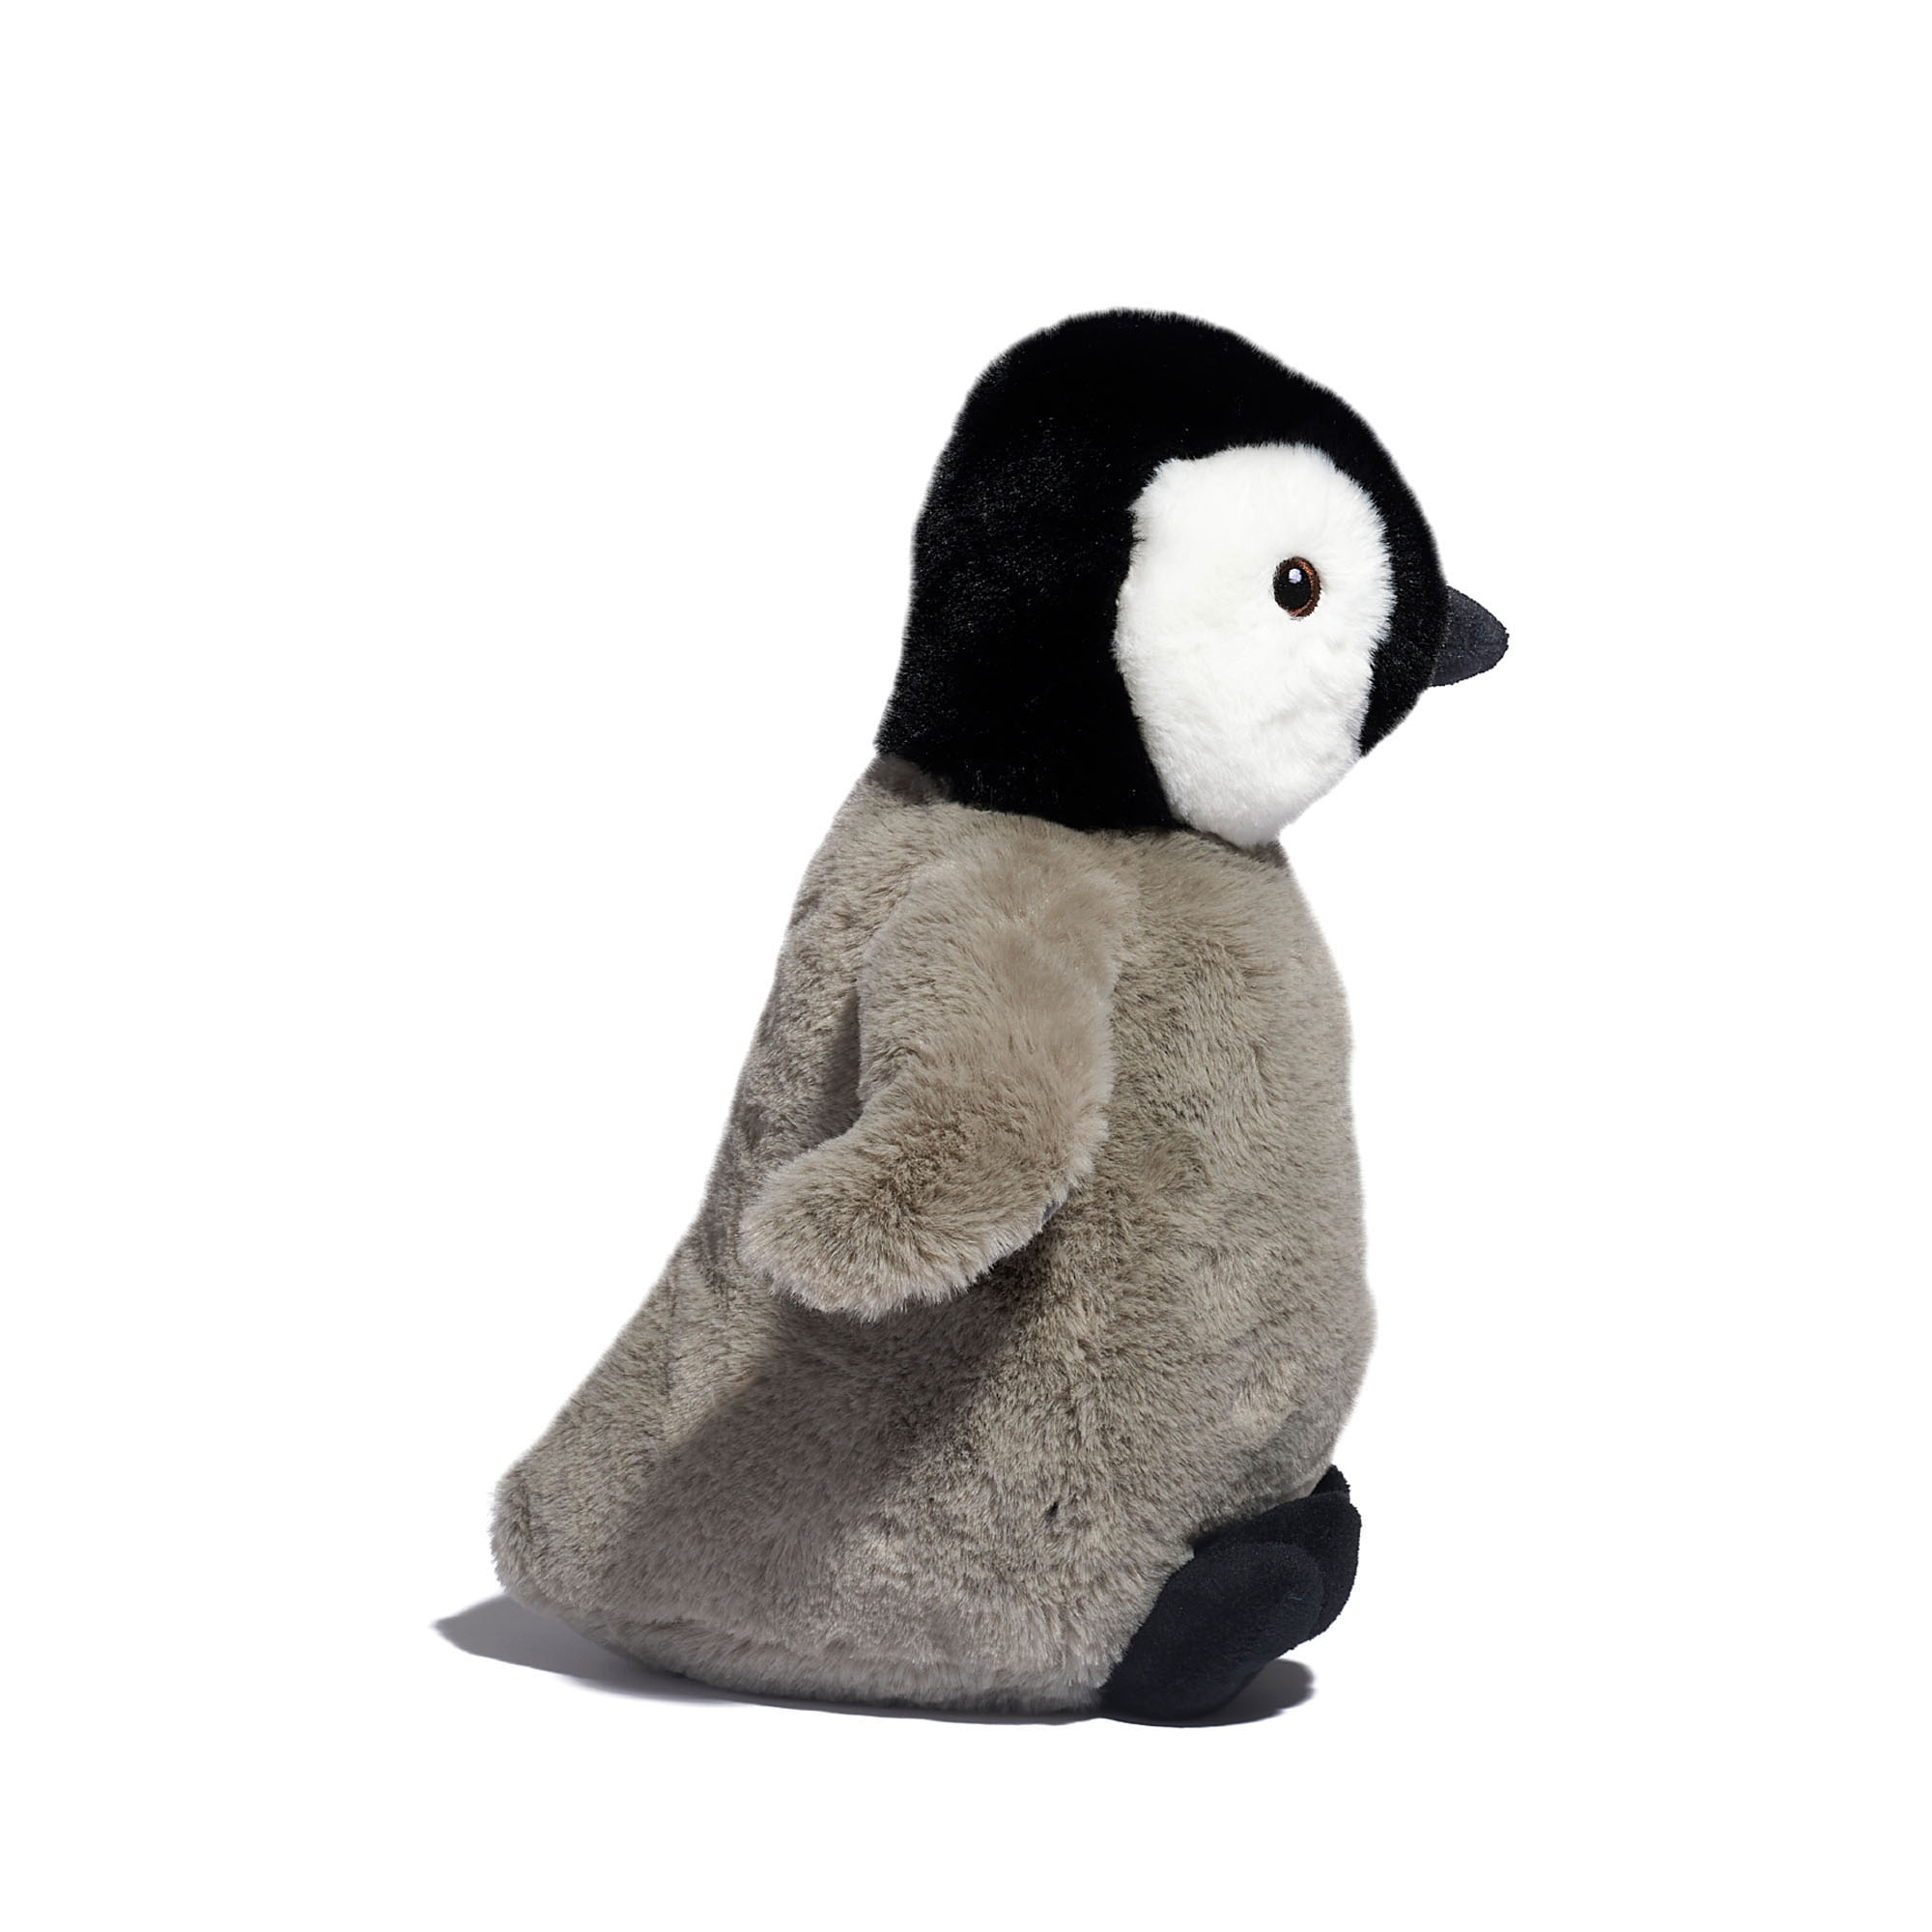 Pinguino di peluche Planet Love 100% da plastica riciclata, 25 cm - FAO Schwarz